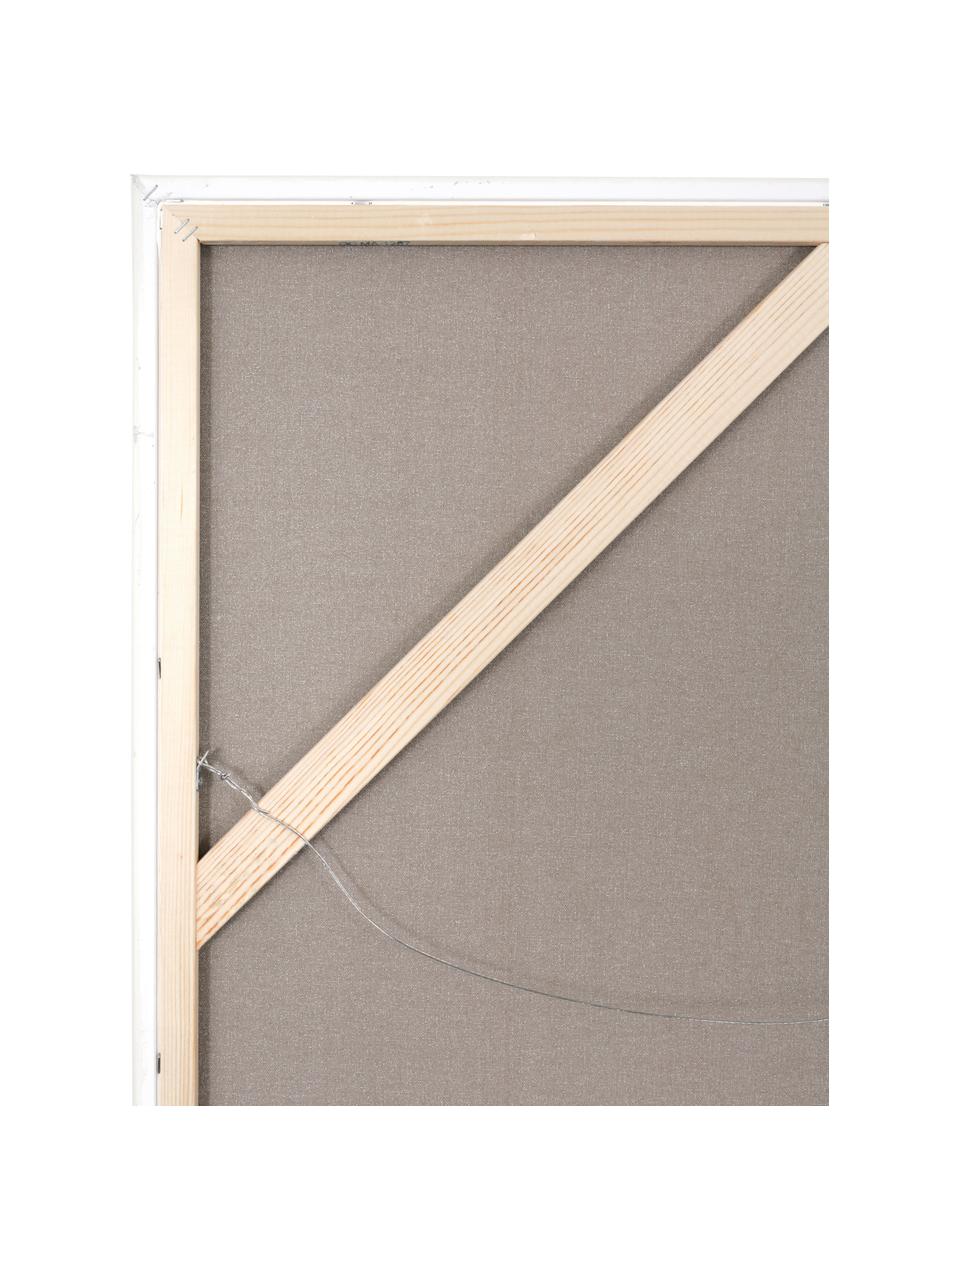 Handgemaltes Leinwandbild Accurate mit Holzrahmen, Rahmen: Eichenholz, beschichtet, Bunt, B 92 x H 120 cm